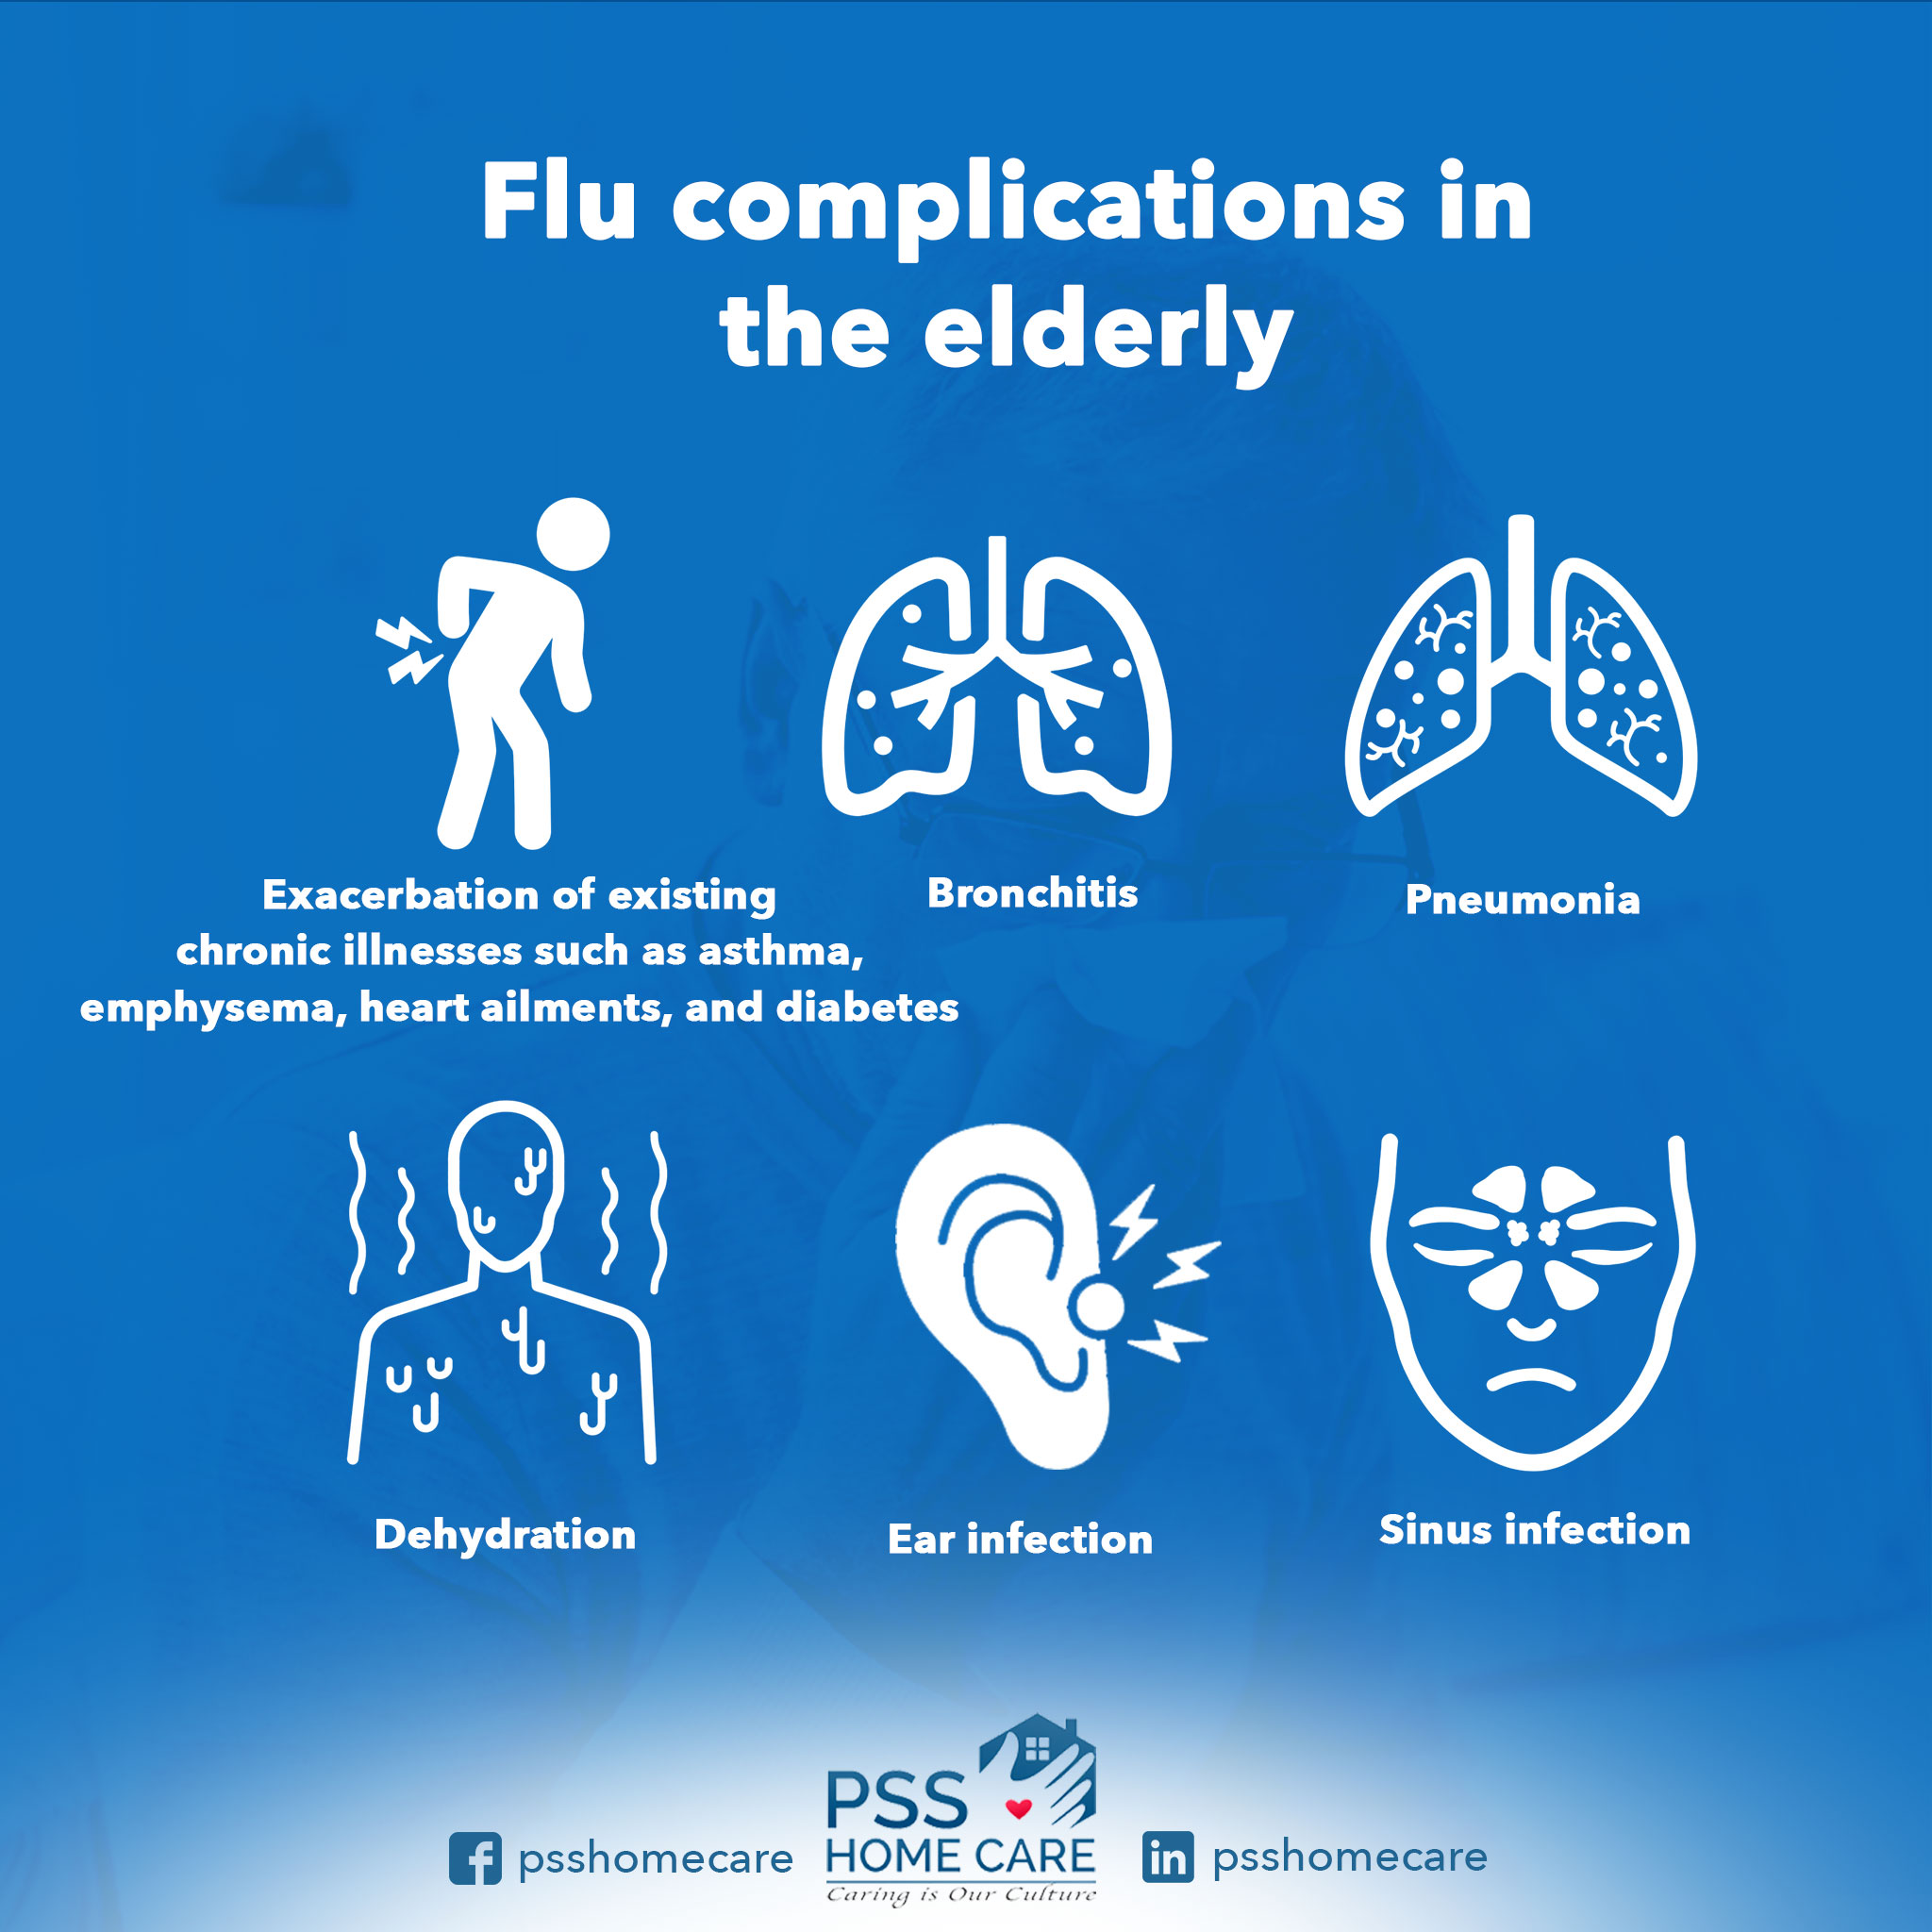 Flu complications in the elderly | Flu in the elderly